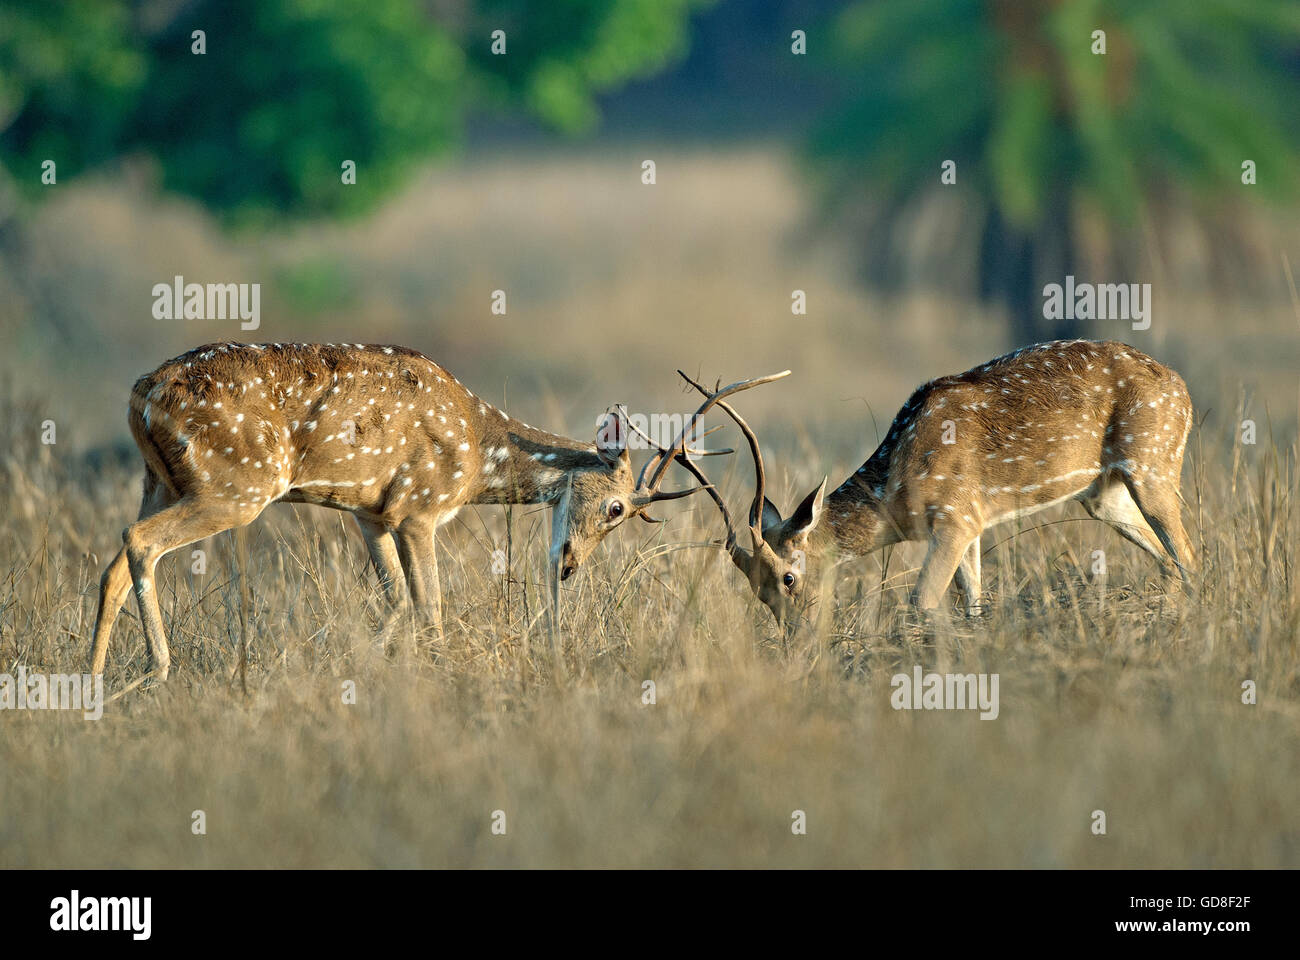 L'image de cerfs communs repèrés ( Axis axis ) lutte , le parc national de Bandavgarh, Inde Banque D'Images